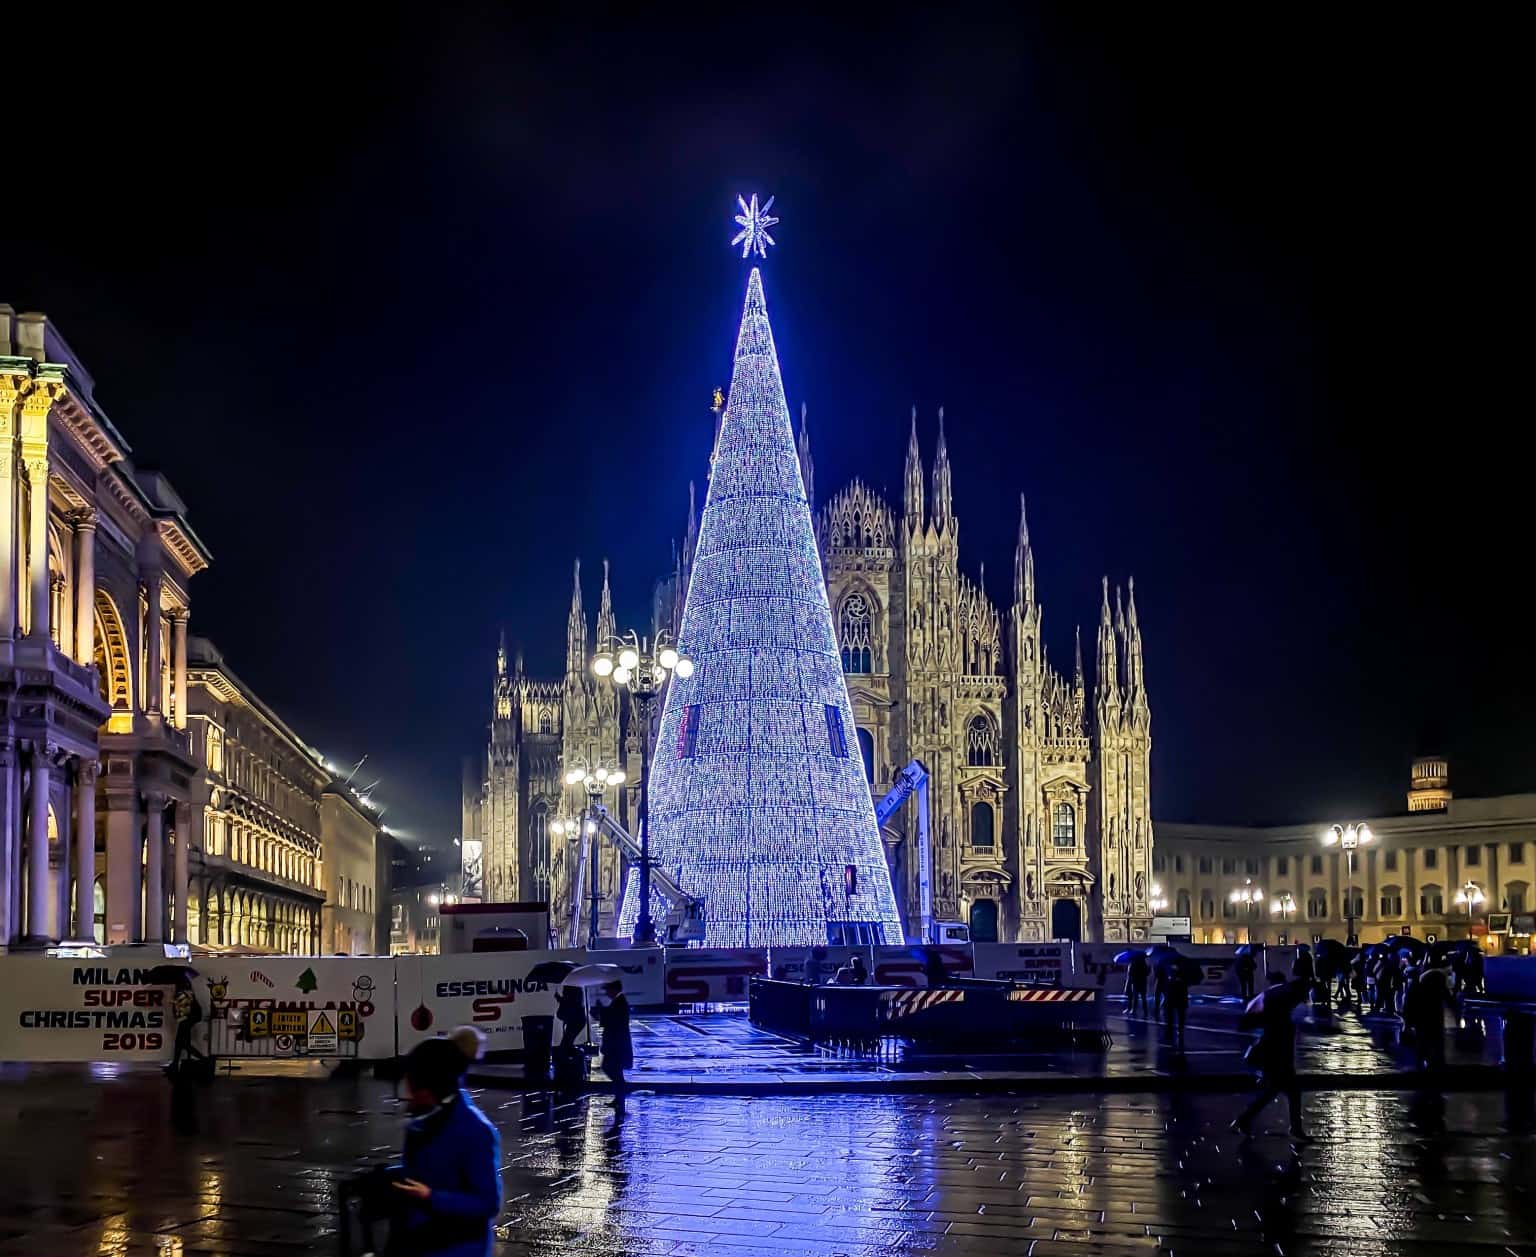 Immagini Natale 2020 Trackidsp 006.Accensione Albero Di Natale In Piazza Duomo Tutte Le Informazioni